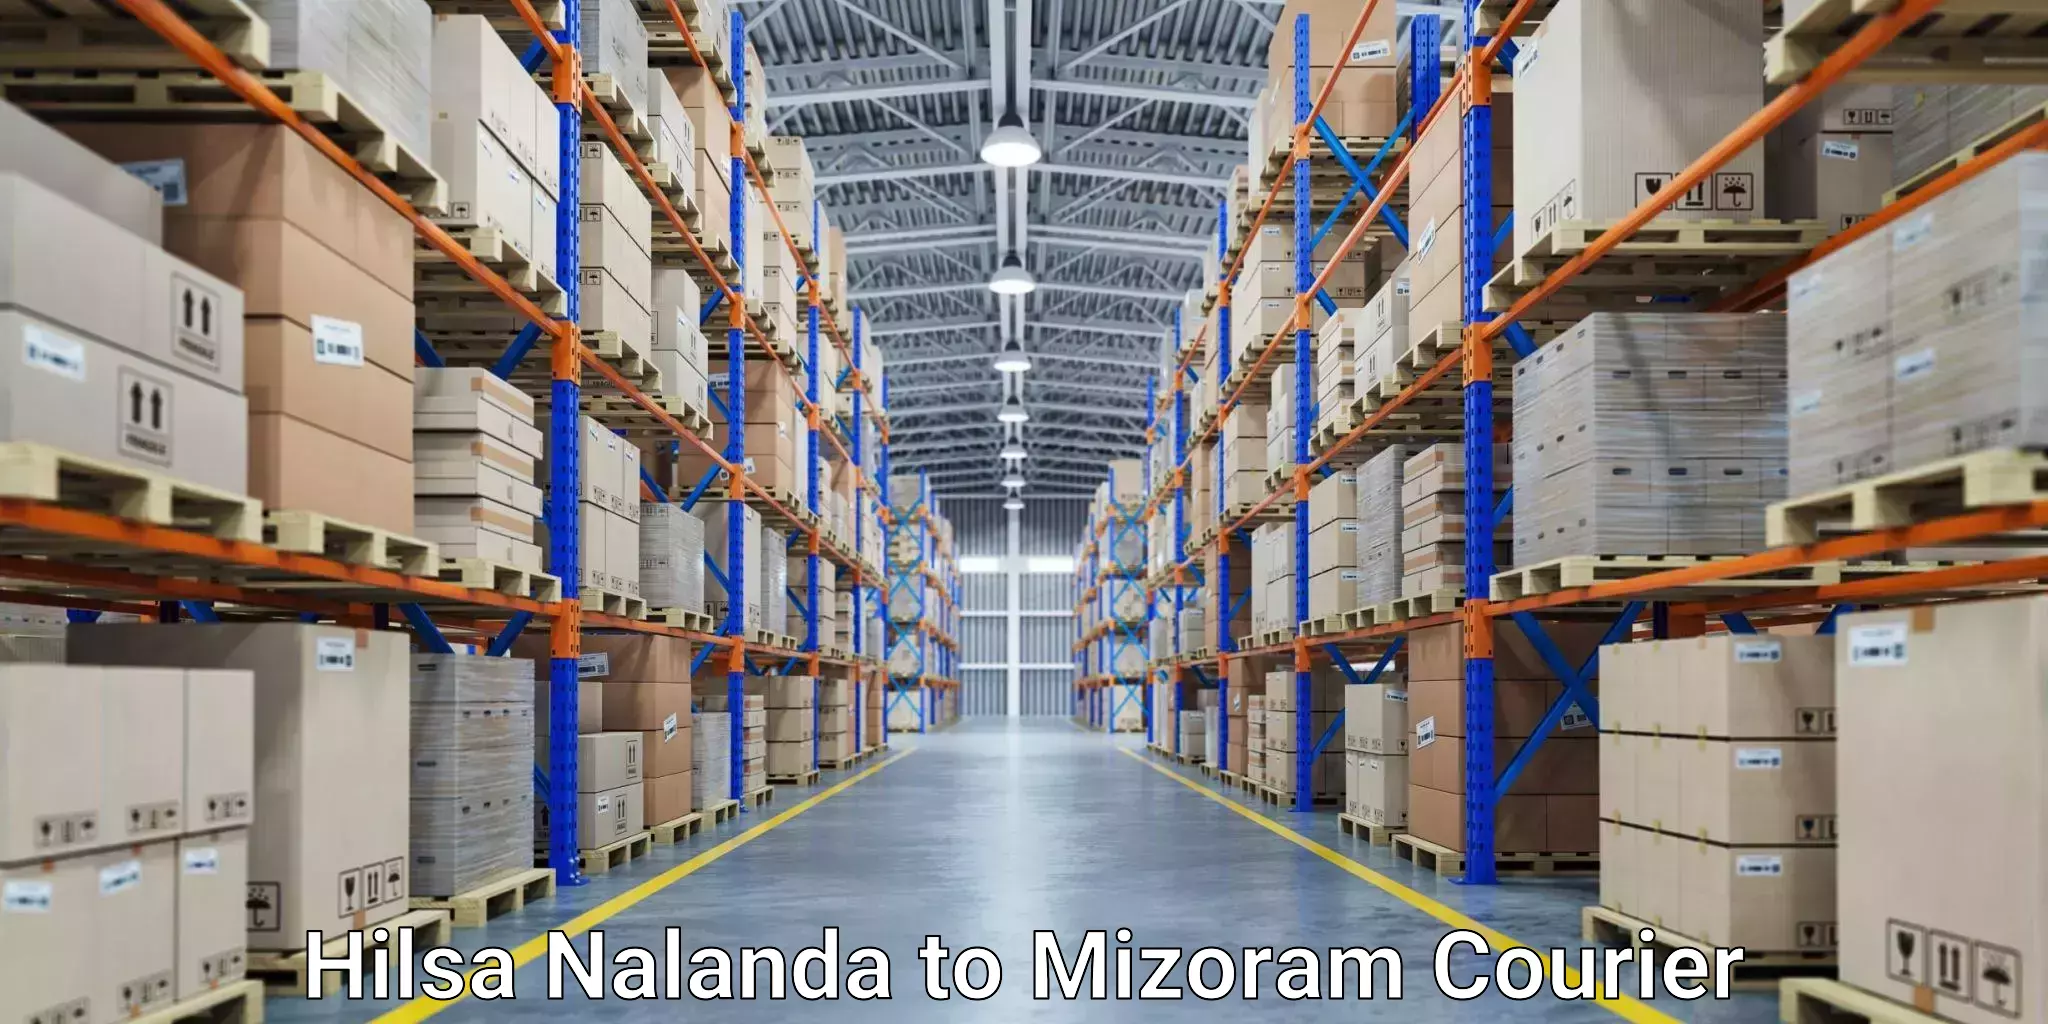 Fast-track shipping solutions Hilsa Nalanda to Mizoram